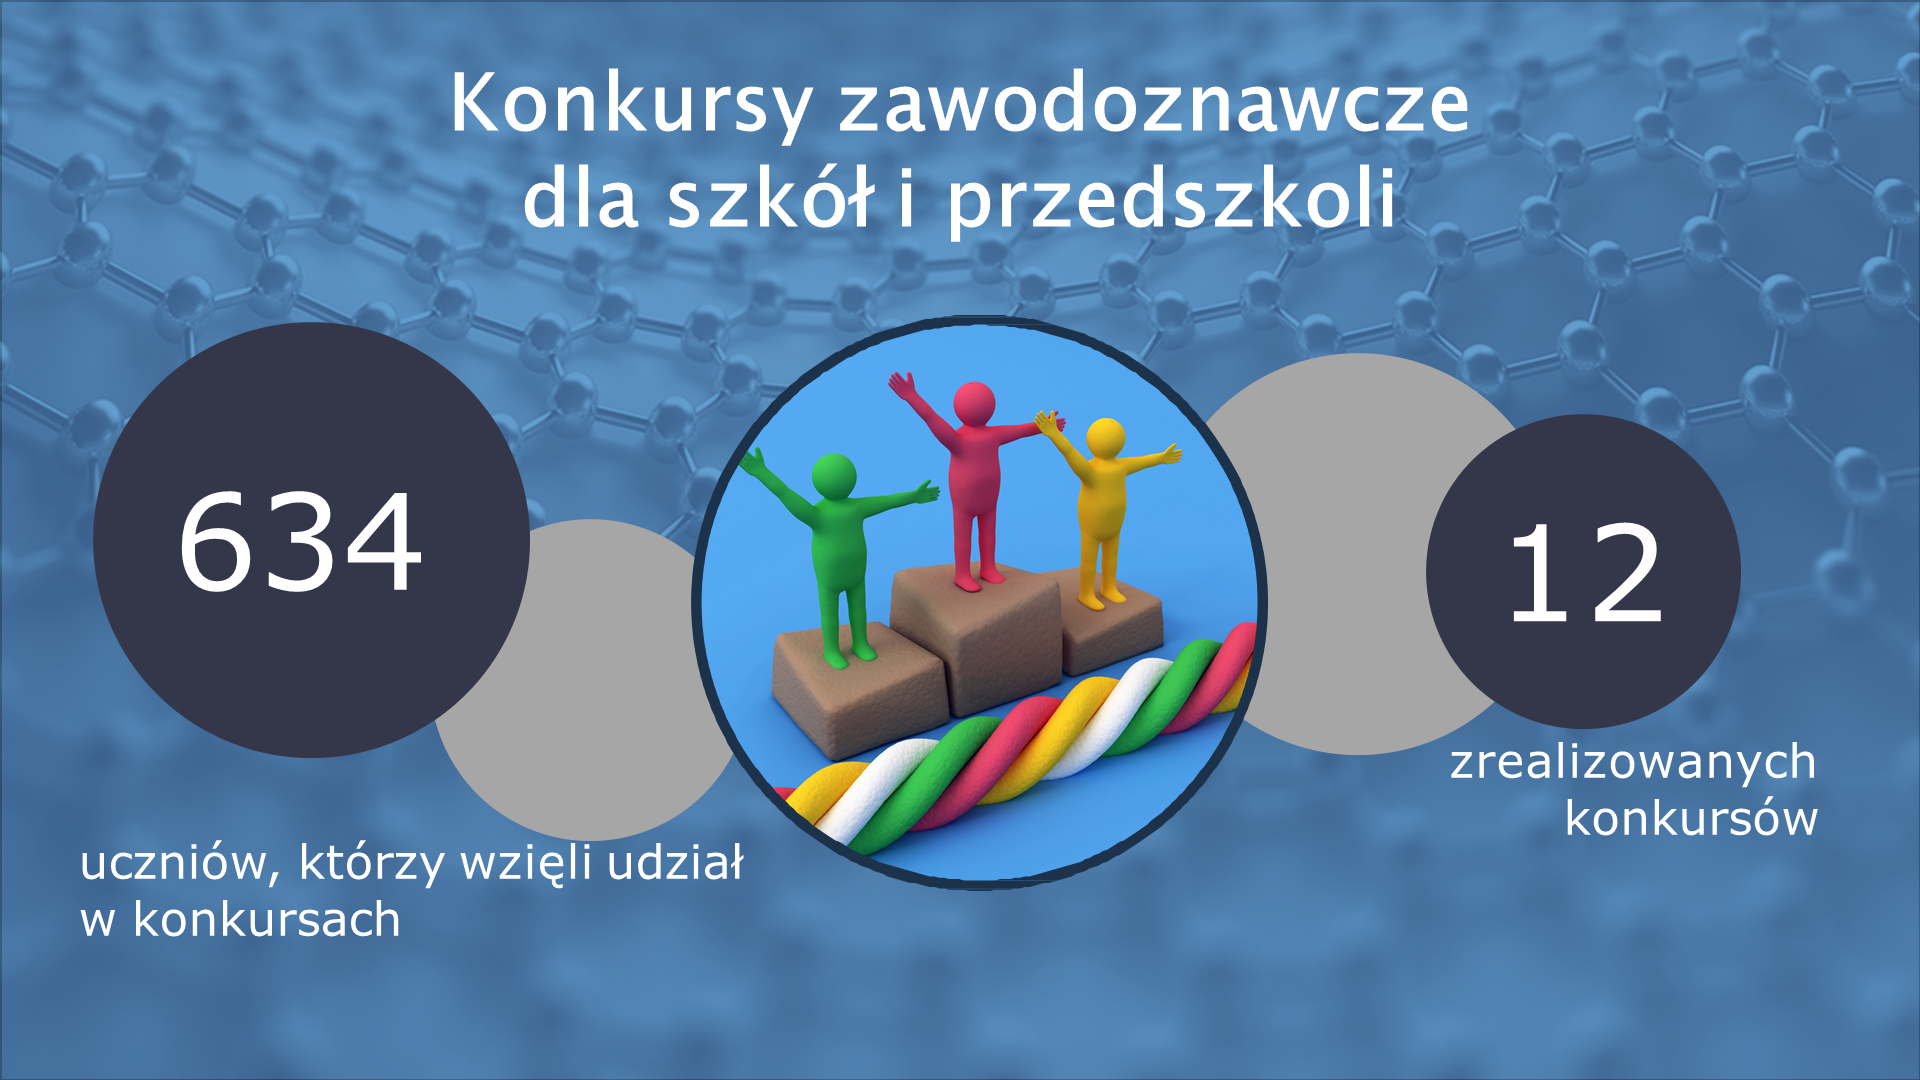 Działania CWRKDiZ w Poznaniu 2017-2021 Slajd10